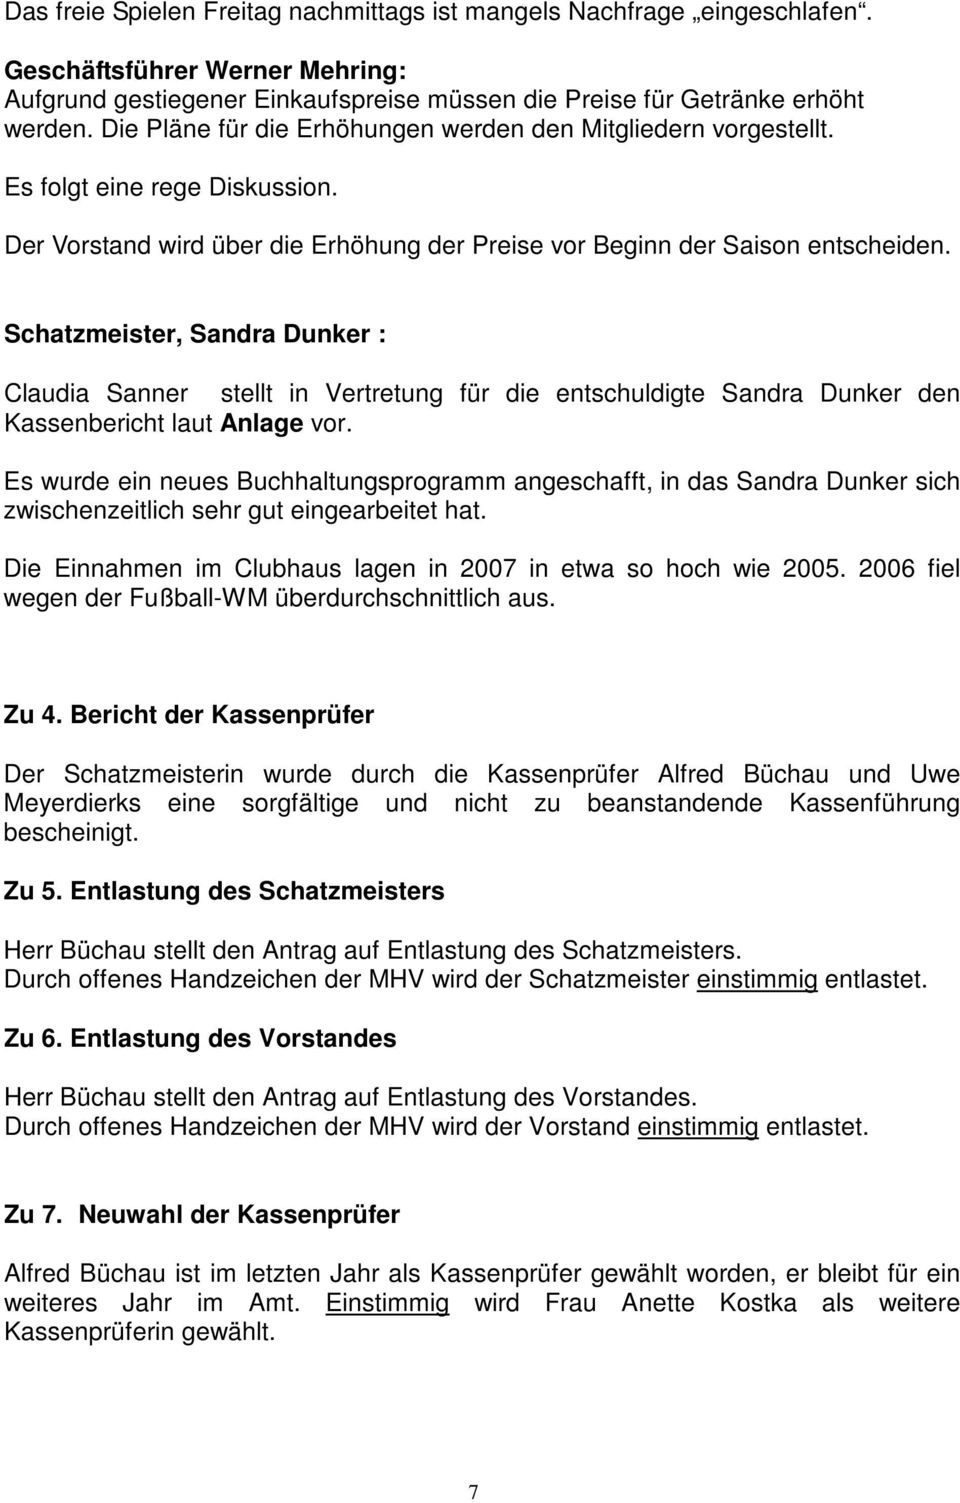 Schatzmeister, Sandra Dunker : Claudia Sanner stellt in Vertretung für die entschuldigte Sandra Dunker den Kassenbericht laut Anlage vor.